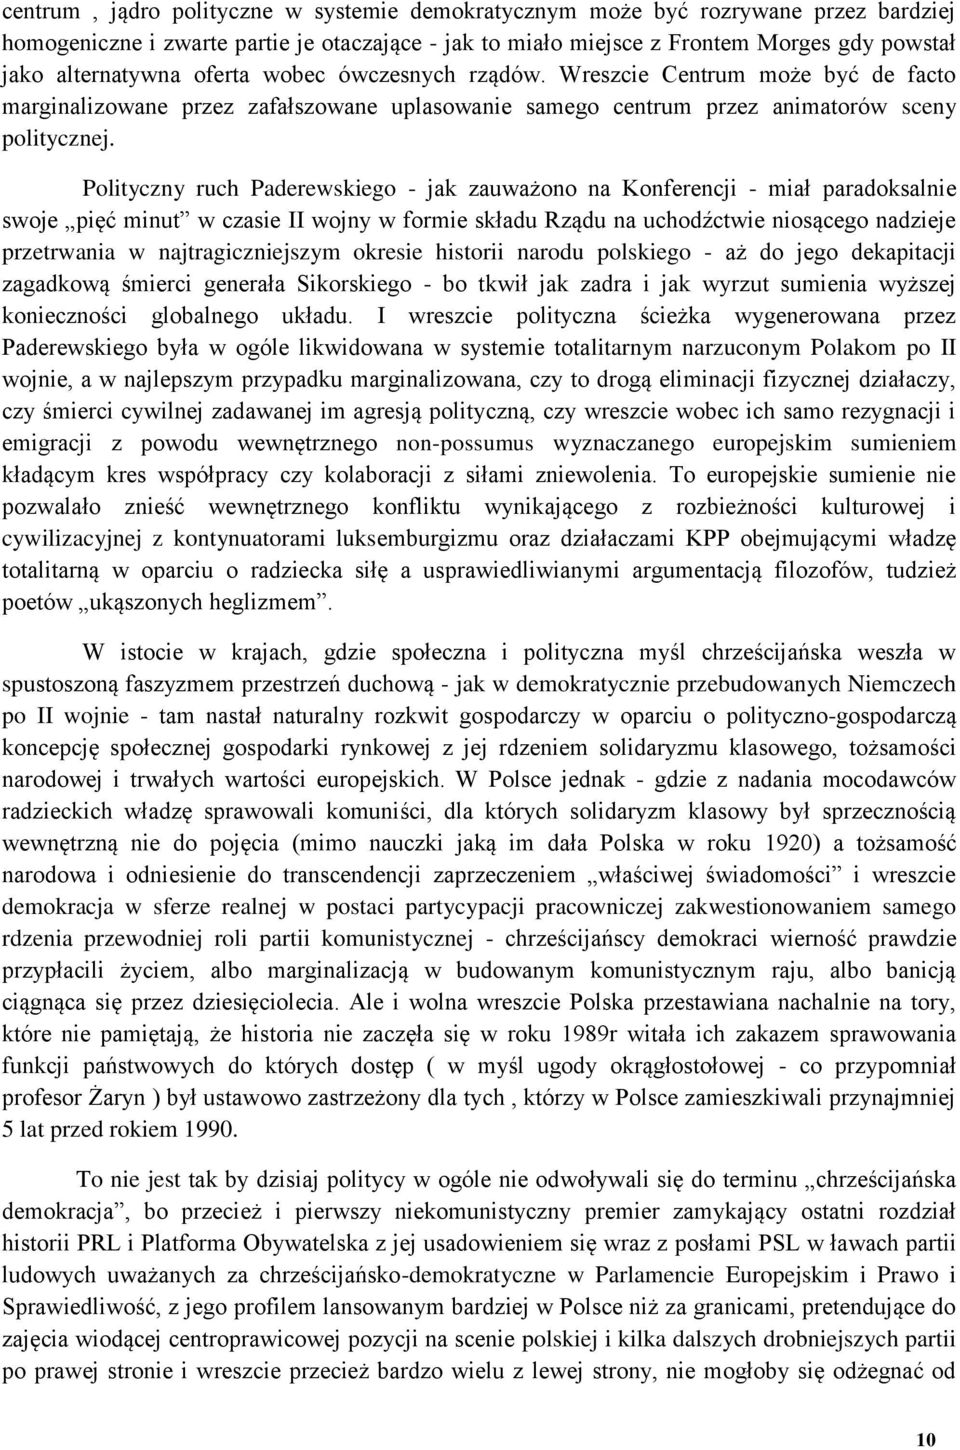 Polityczny ruch Paderewskiego - jak zauważono na Konferencji - miał paradoksalnie swoje pięć minut w czasie II wojny w formie składu Rządu na uchodźctwie niosącego nadzieje przetrwania w